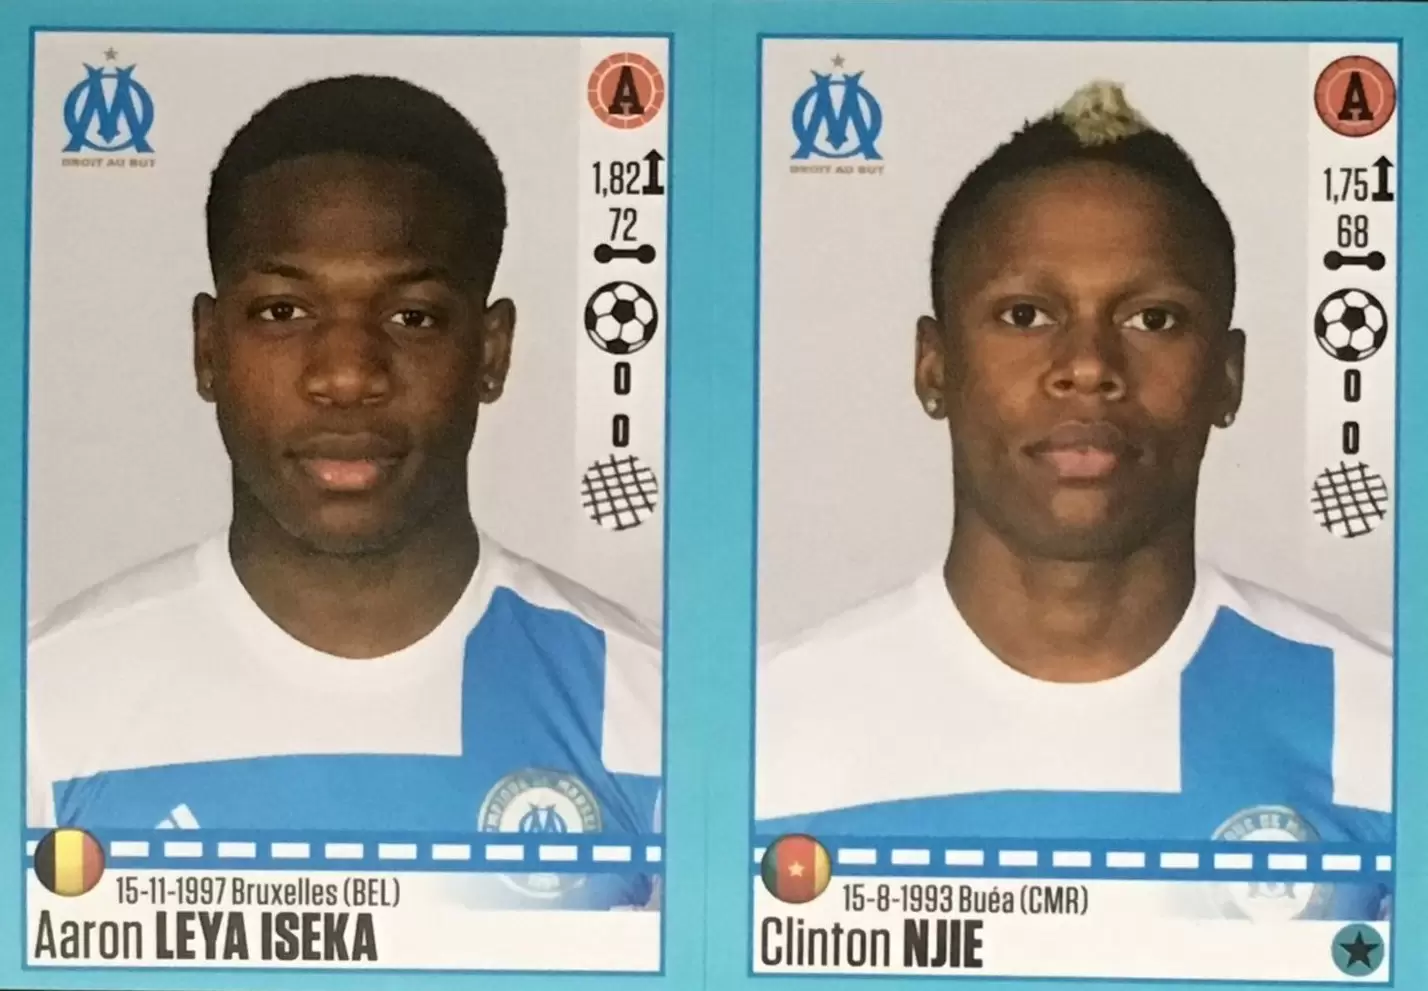 Foot 2016-17 - Aaron Leya Iseka - Clinton Njie - Marseille